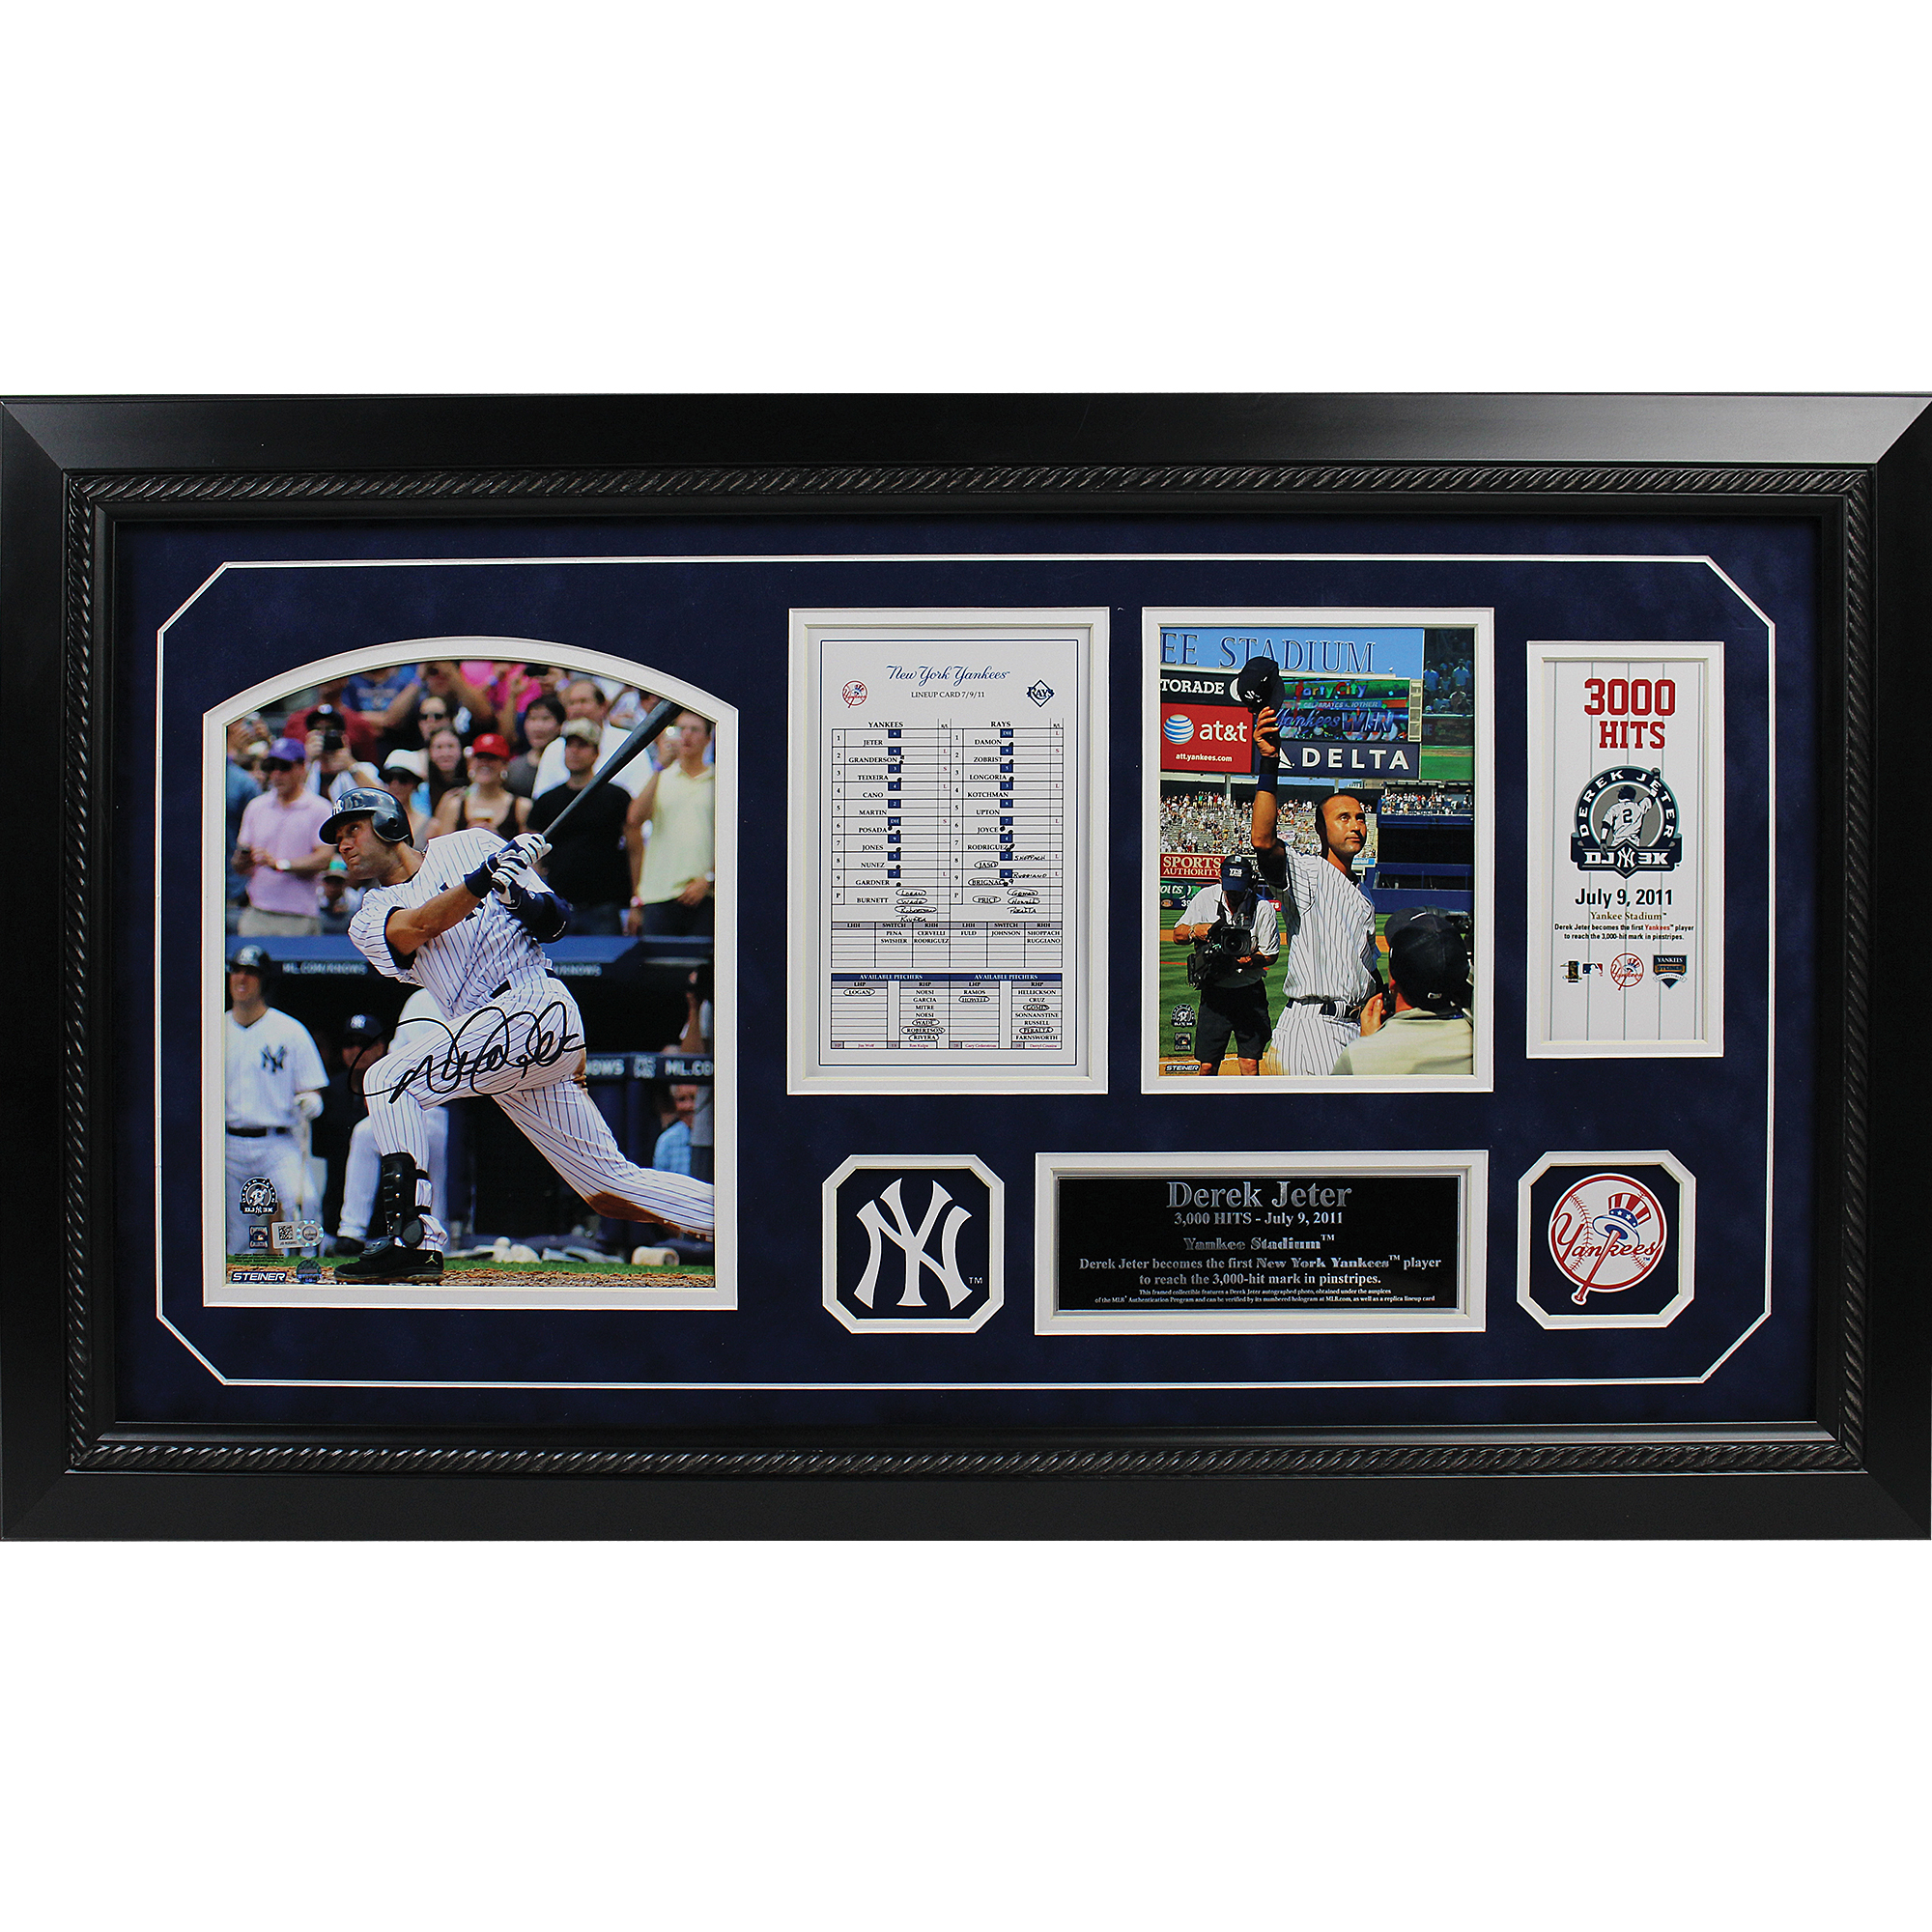 Yankees Memorabilia, New York Yankees Collectibles, Signed Yankees